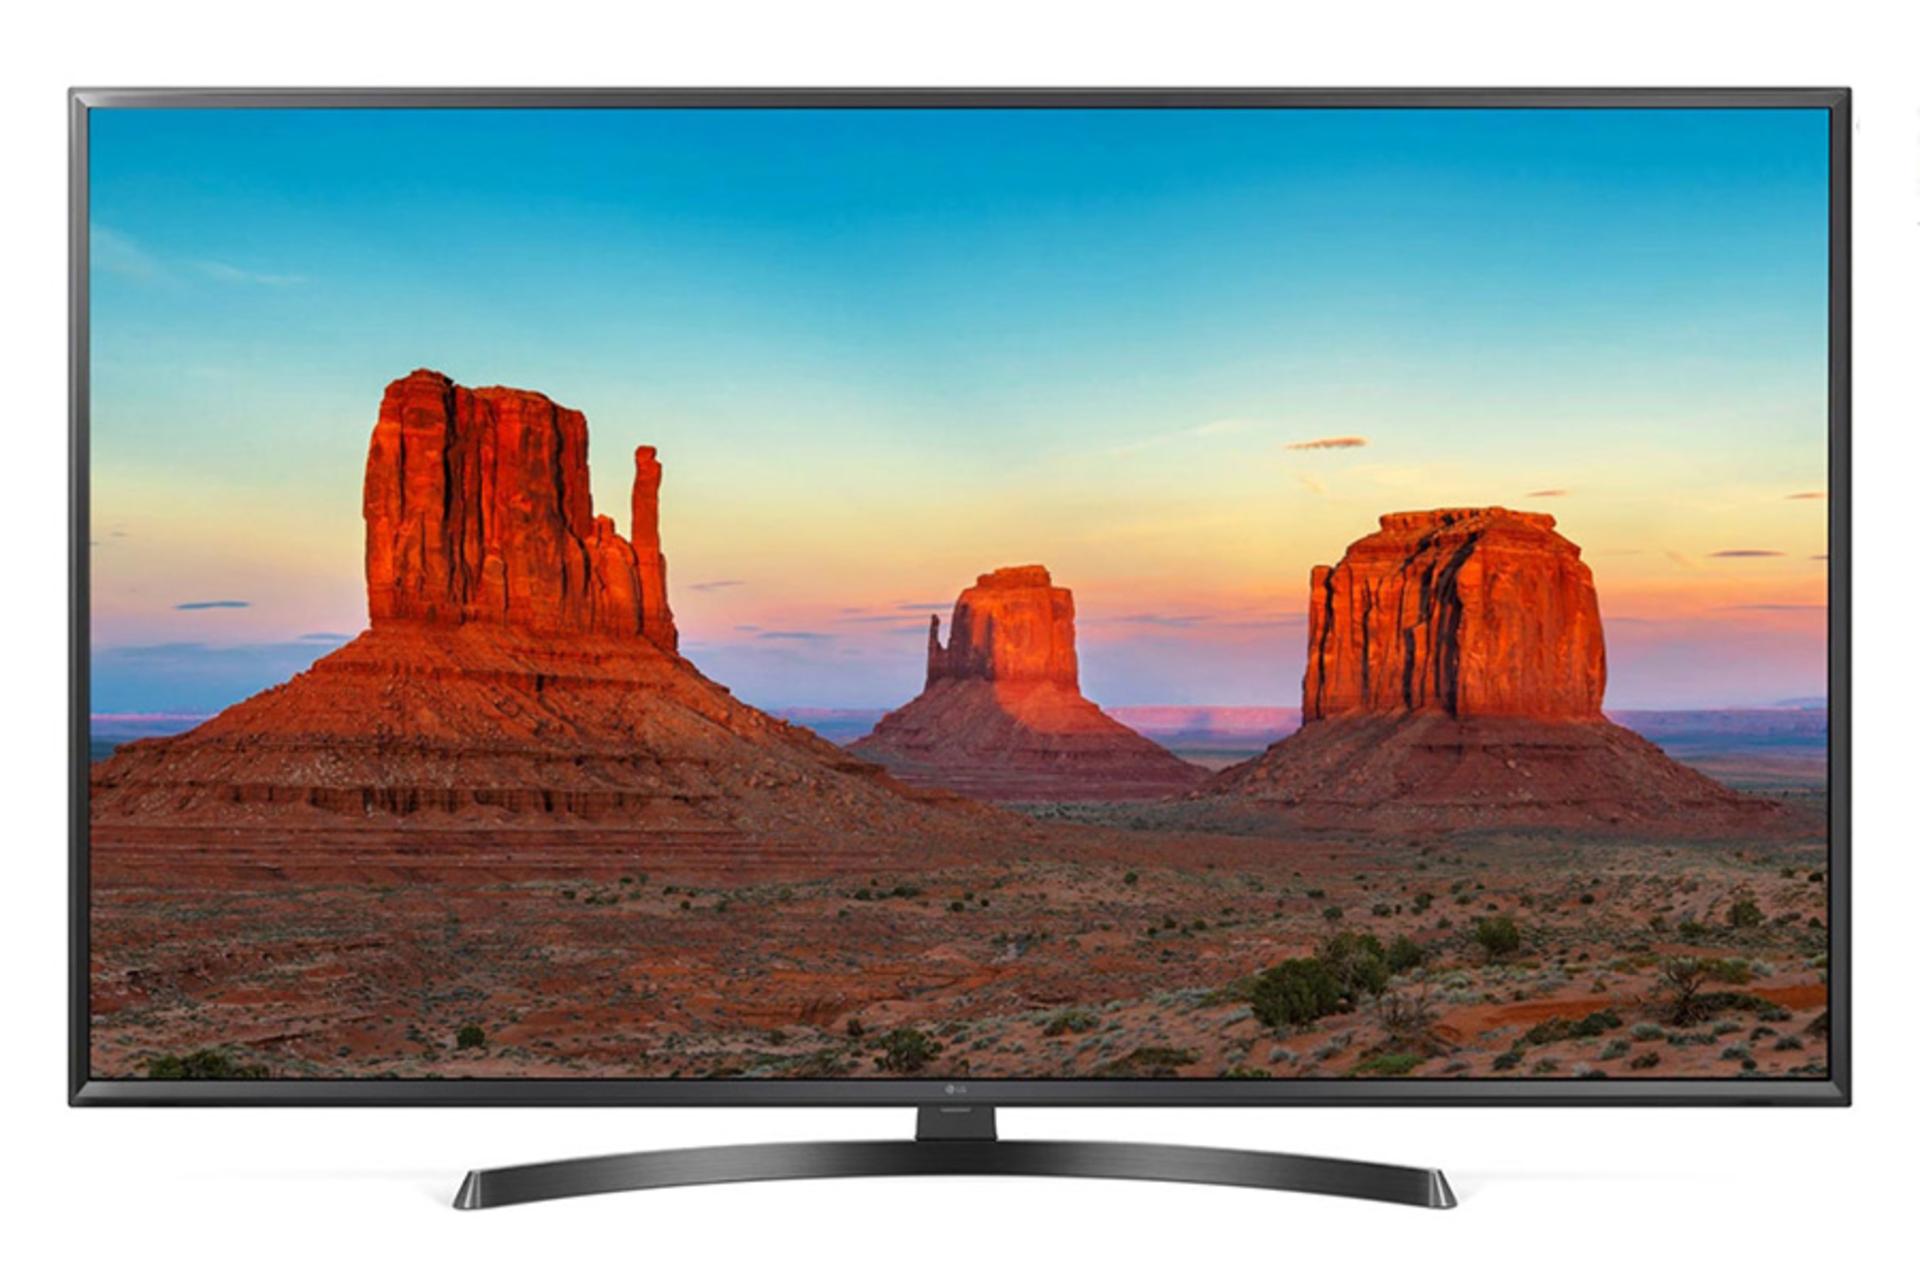 نمای جلو تلویزیون UK6400 مدل 49 اینچ با صفحه روشن